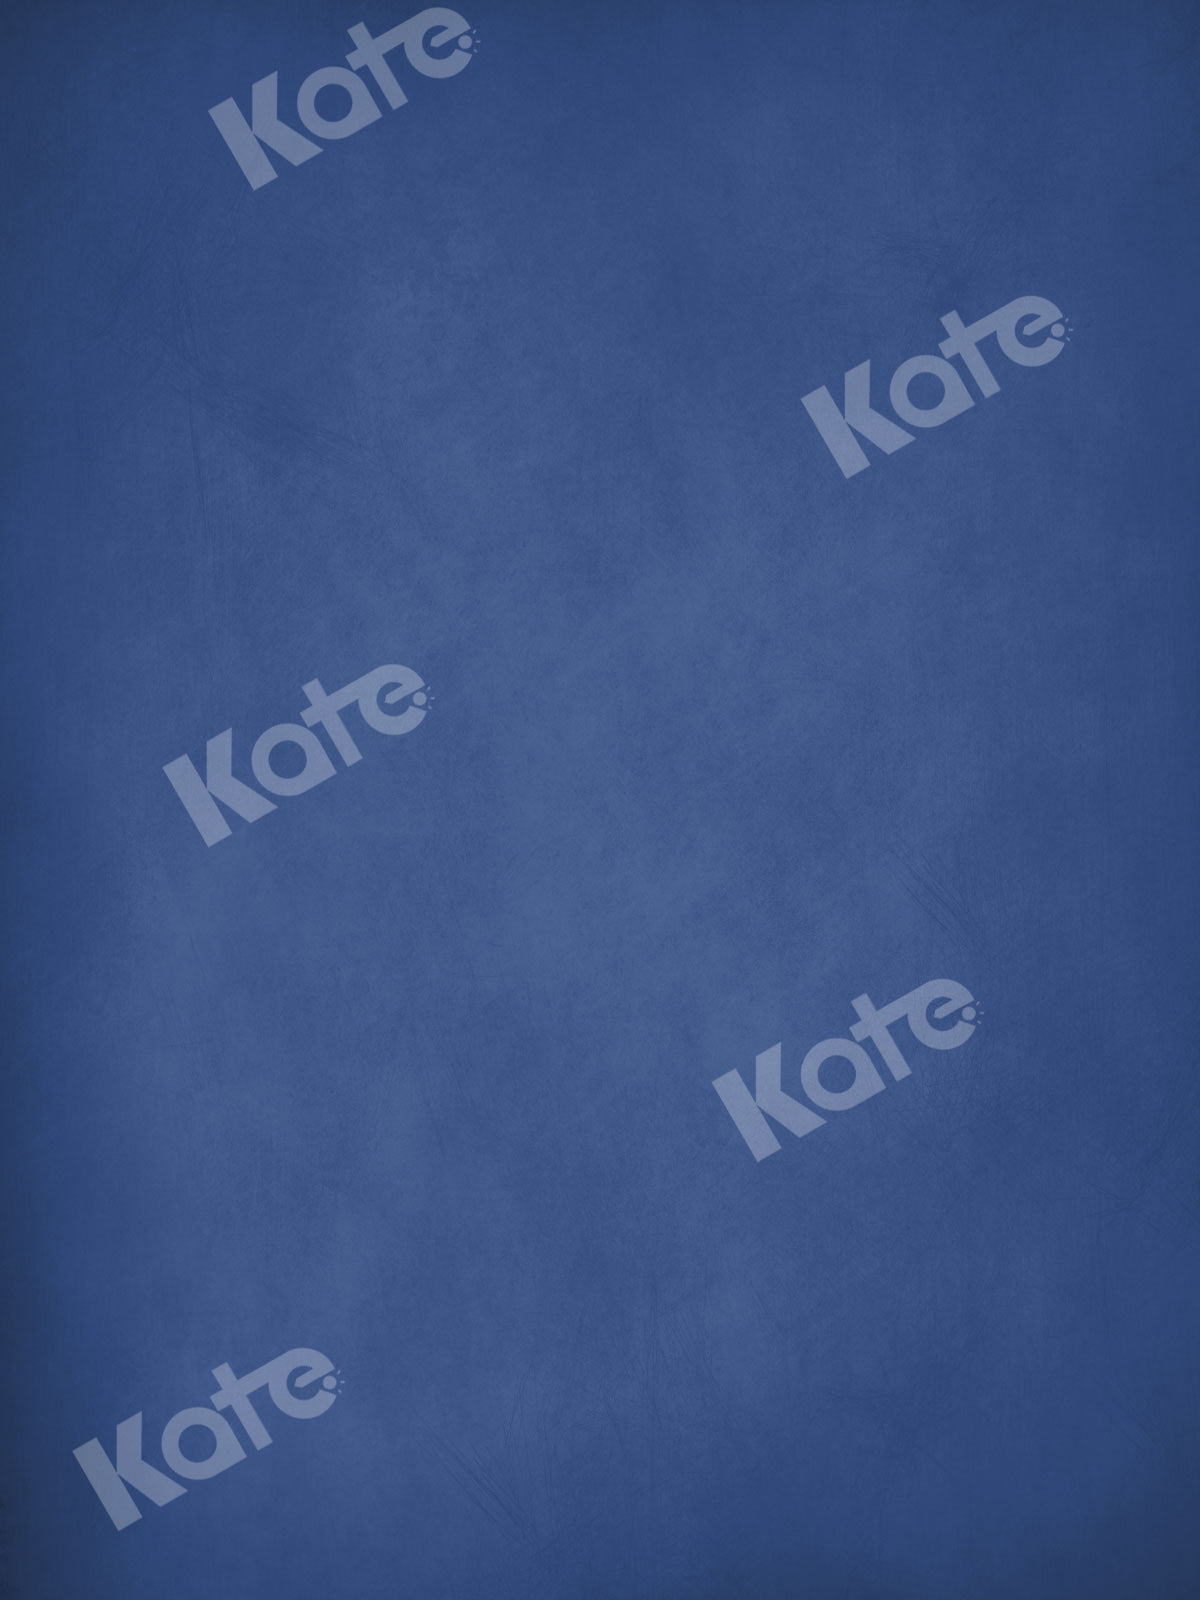 Kate 写真撮影のための青いポートレート背景